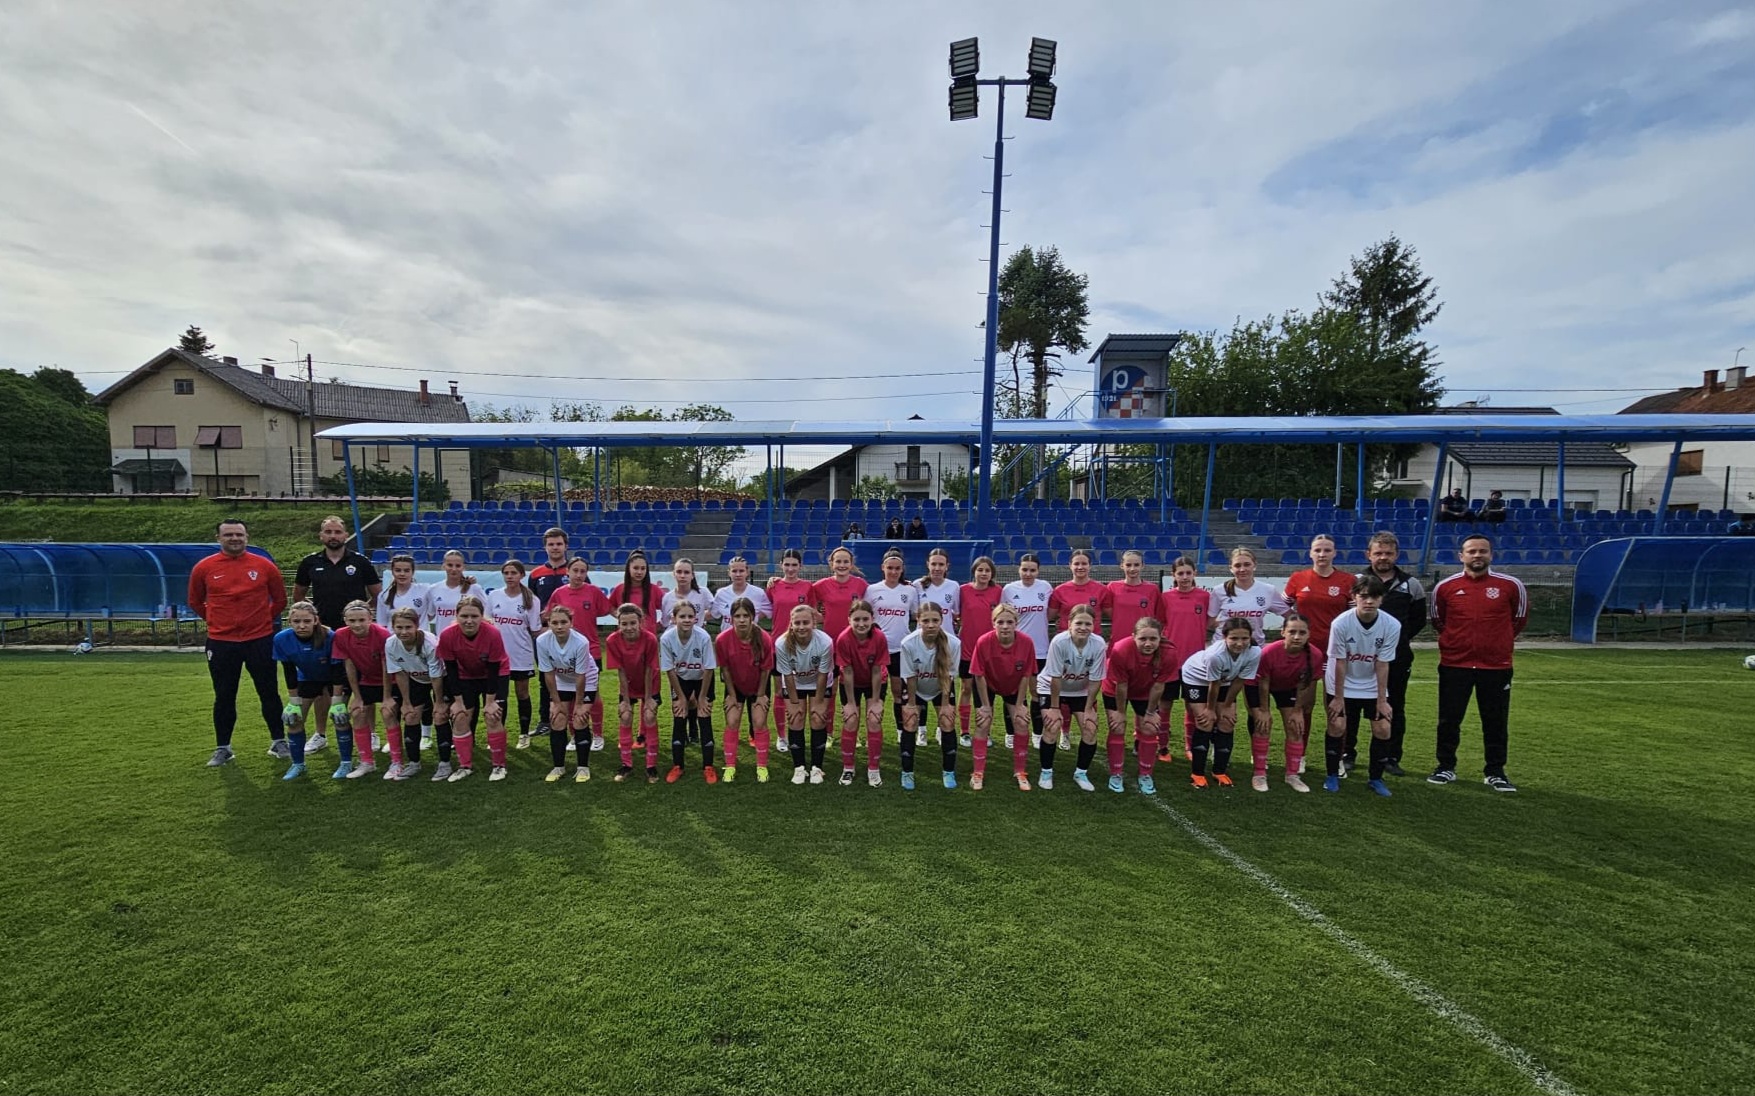 Čak devet igračica Ženskog nogometnog kluba Koprivnica odigralo je završnu međužupanijsku selektivnu utakmicu Nogometnog središta Sjever Hrvatskog nogometnog saveza.